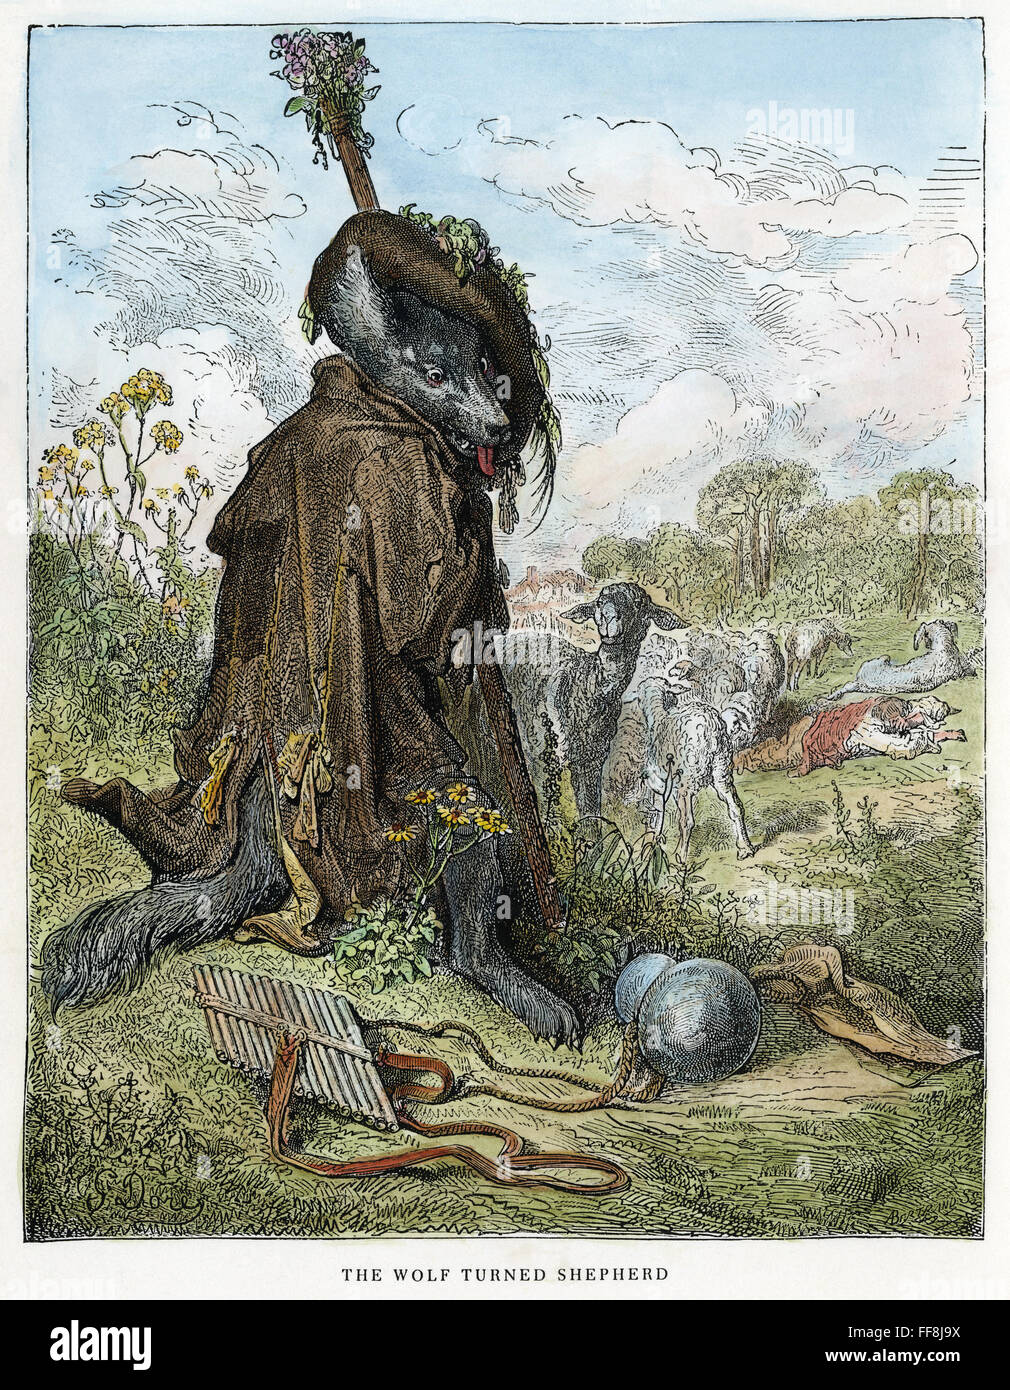 LA FONTAINE: Wolf. /N'Tegli Wolf girato pastore.' incisione su legno dopo Gustave DorΘ per "l' favole di Jean de La Fontaine, c1870. Foto Stock